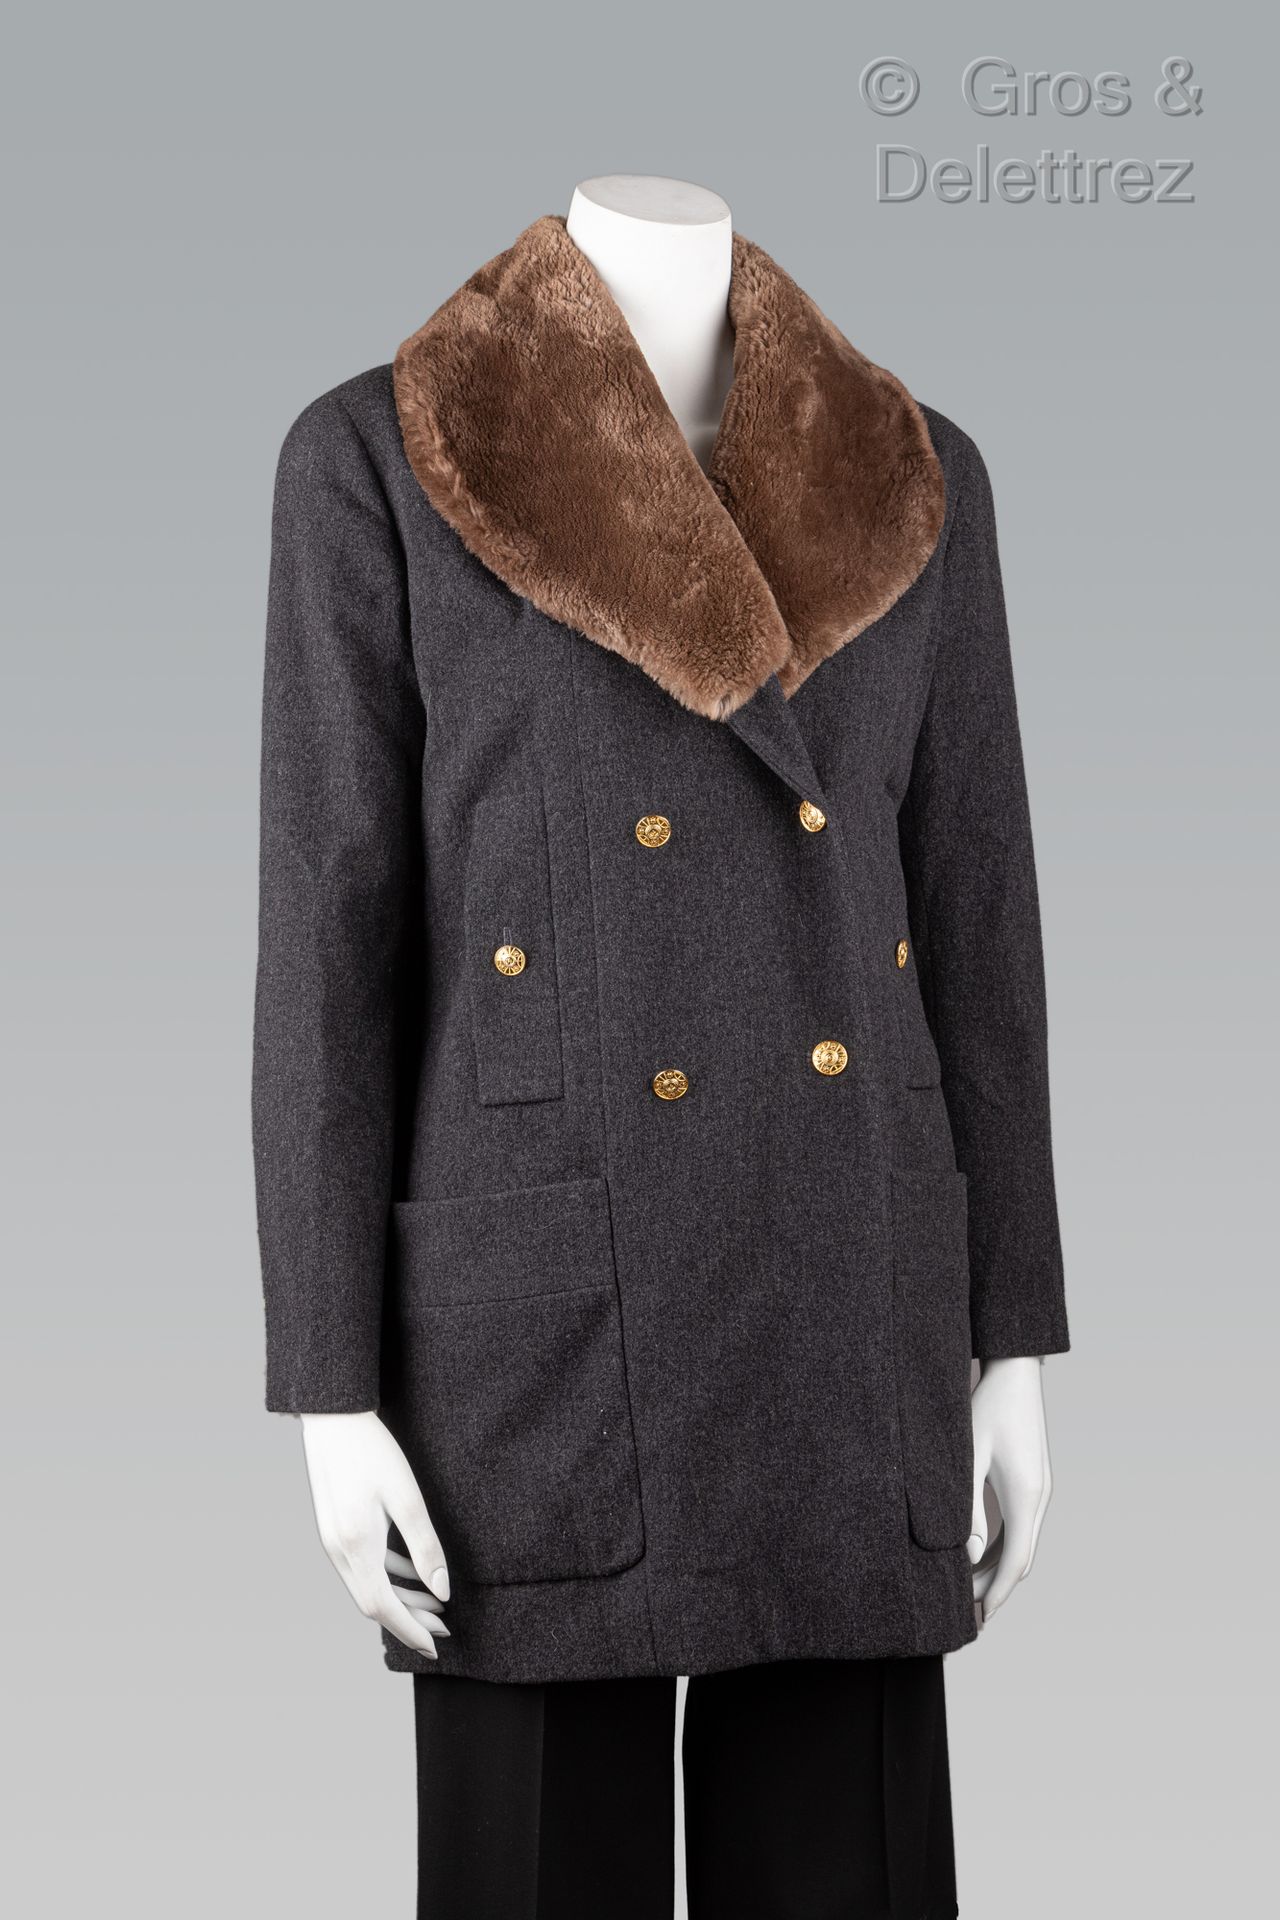 Null CHANEL Boutique von Karl Lagerfeld

Circa 1990

Kanadische Jacke aus anthra&hellip;